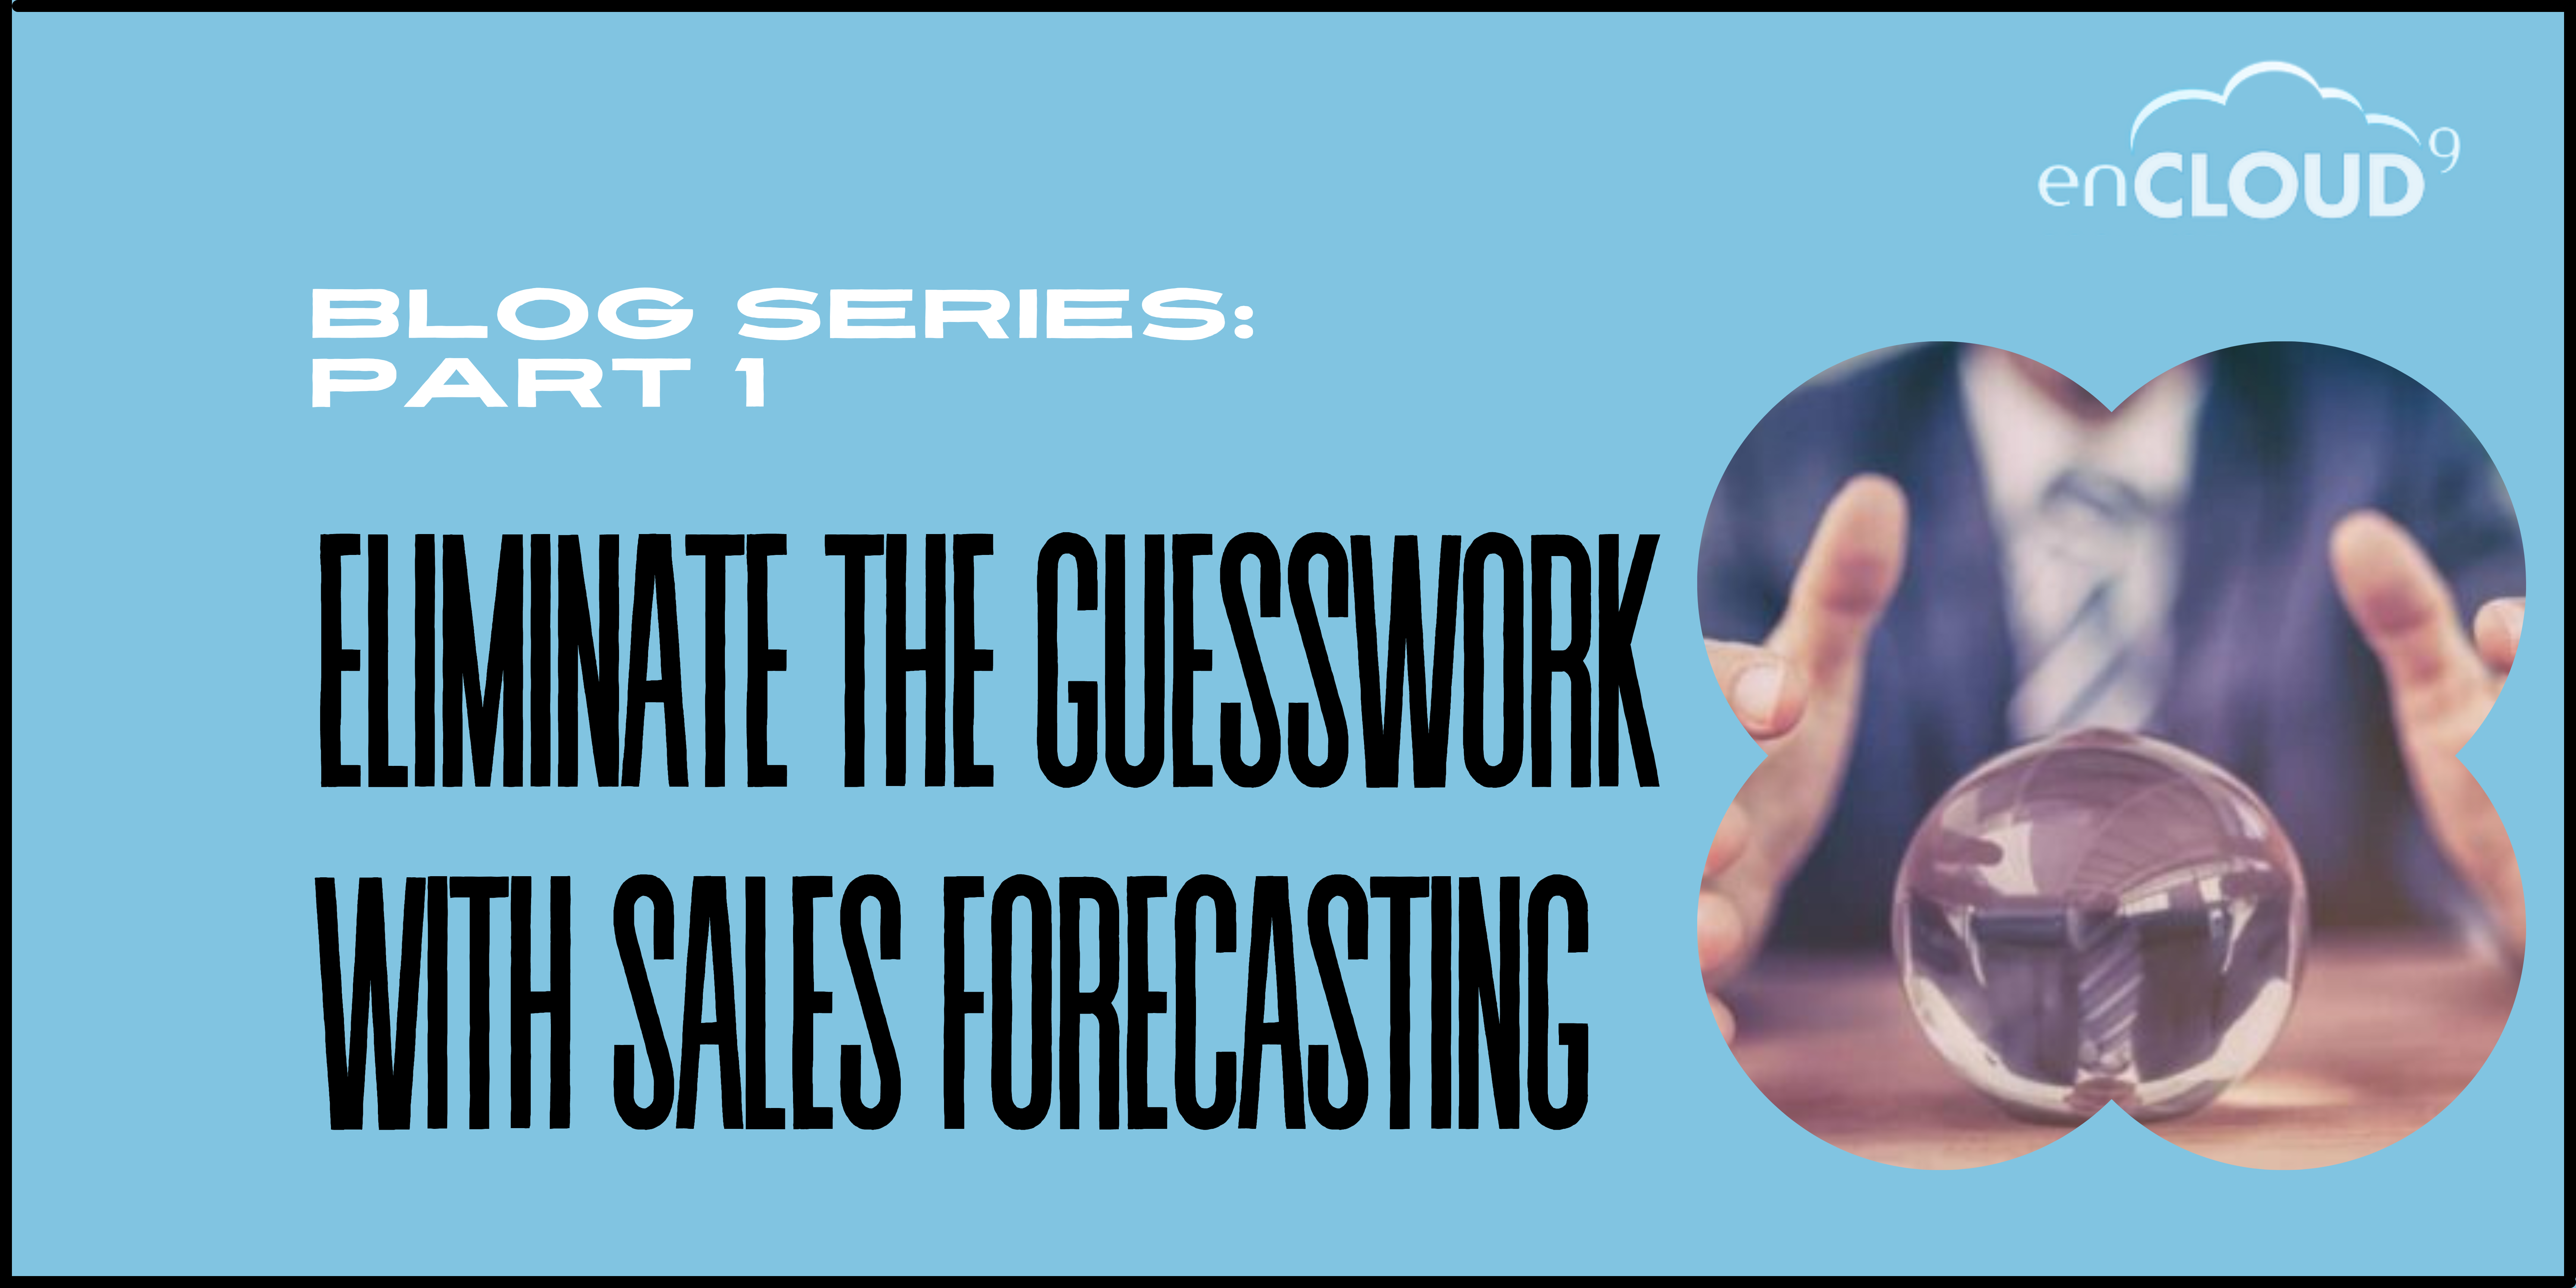 Sales Forecasting | Dynamics 365 | enCloud9